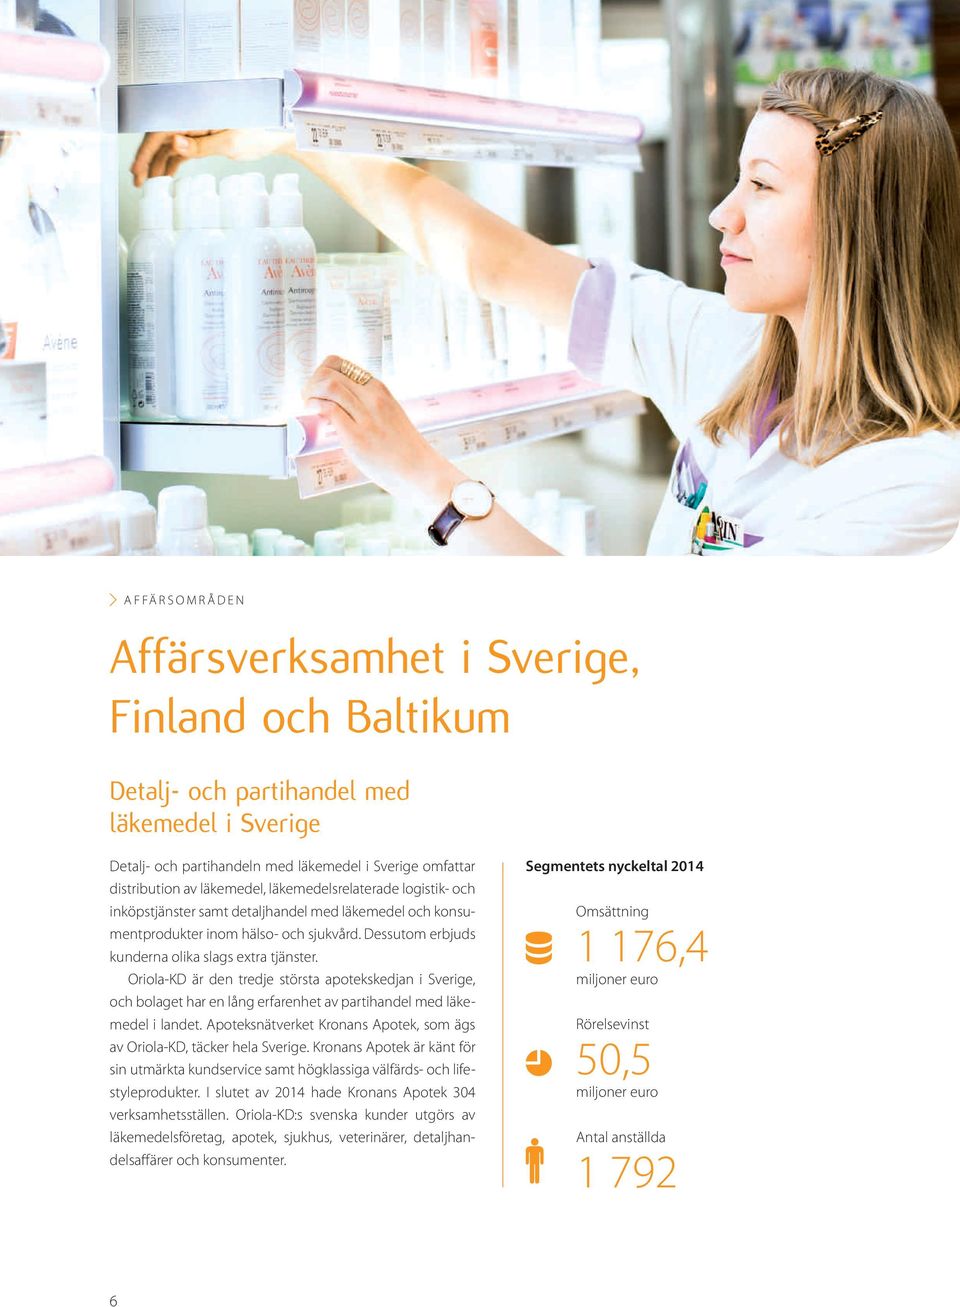 Oriola-KD är den tredje största apotekskedjan i Sverige, och bolaget har en lång erfarenhet av partihandel med läkemedel i landet.